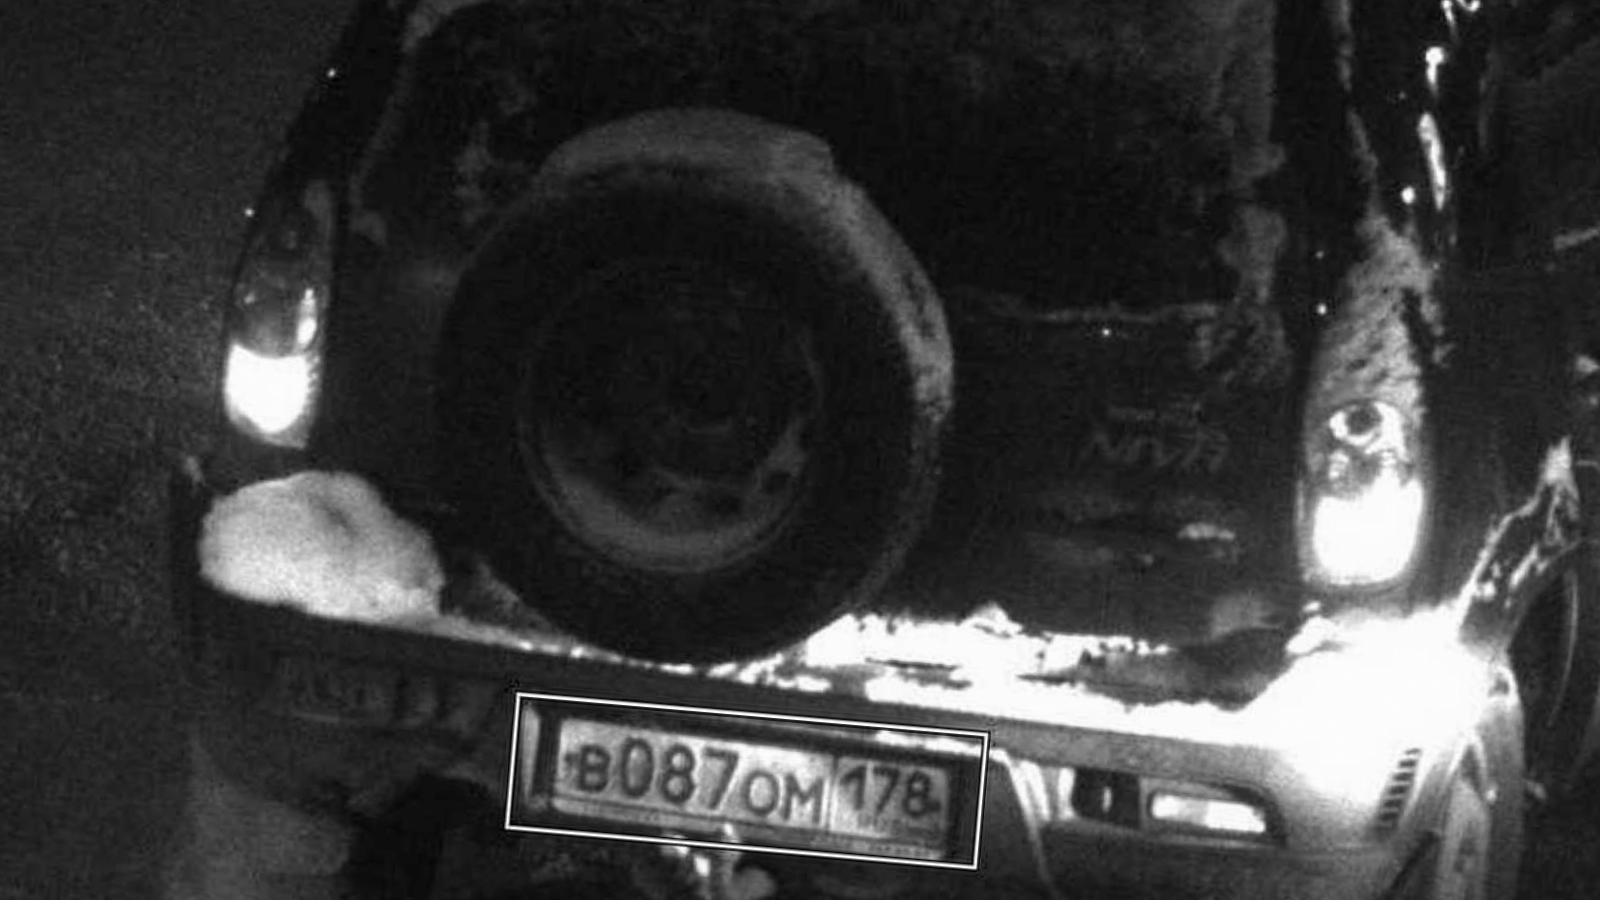  Сбившего девочку водителя разыскивают в Мурманске